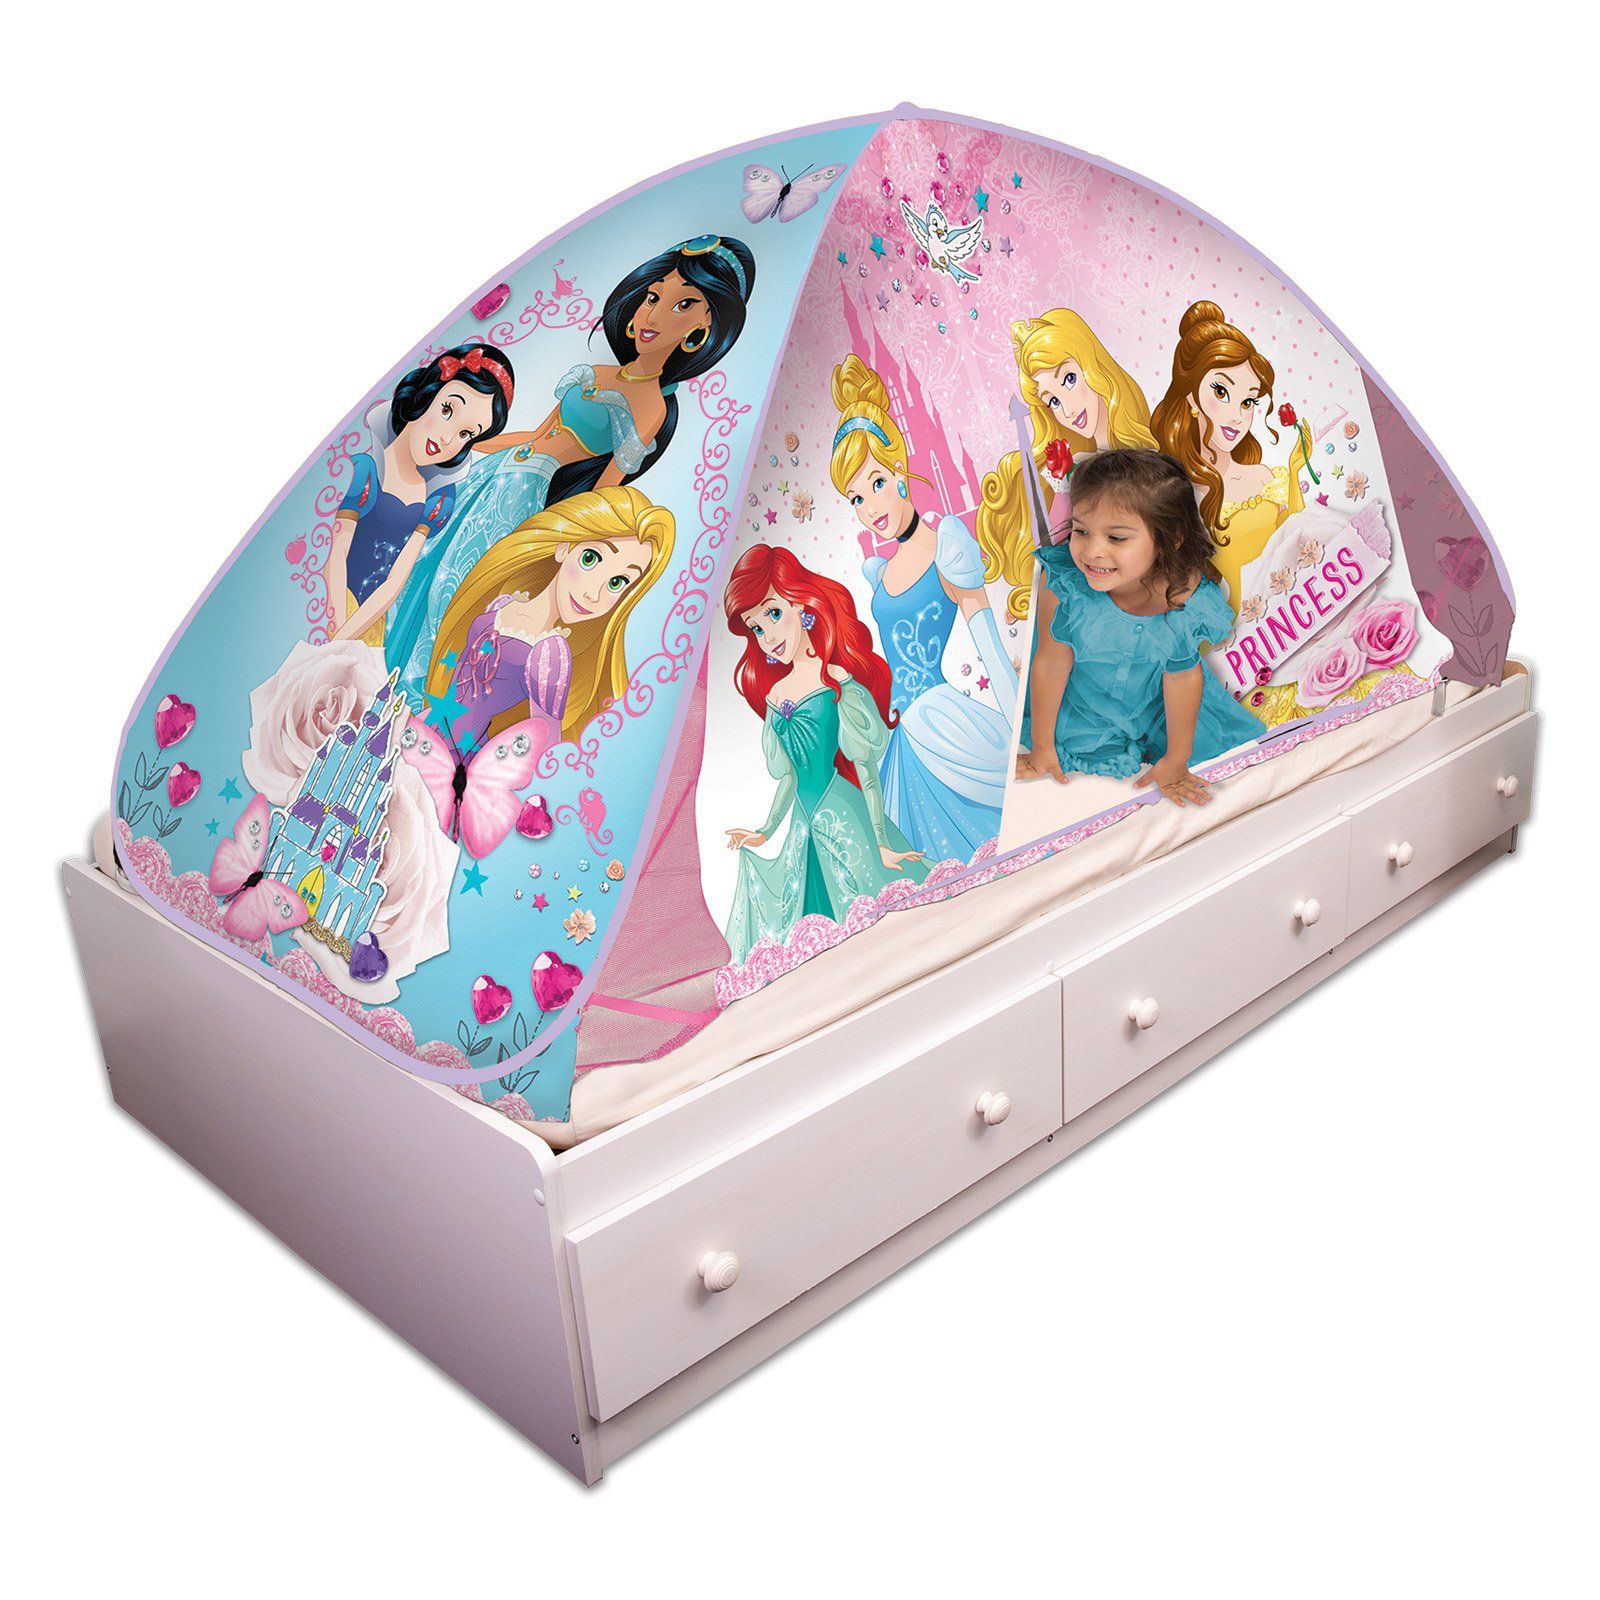 Disney princess hide n fun tent review